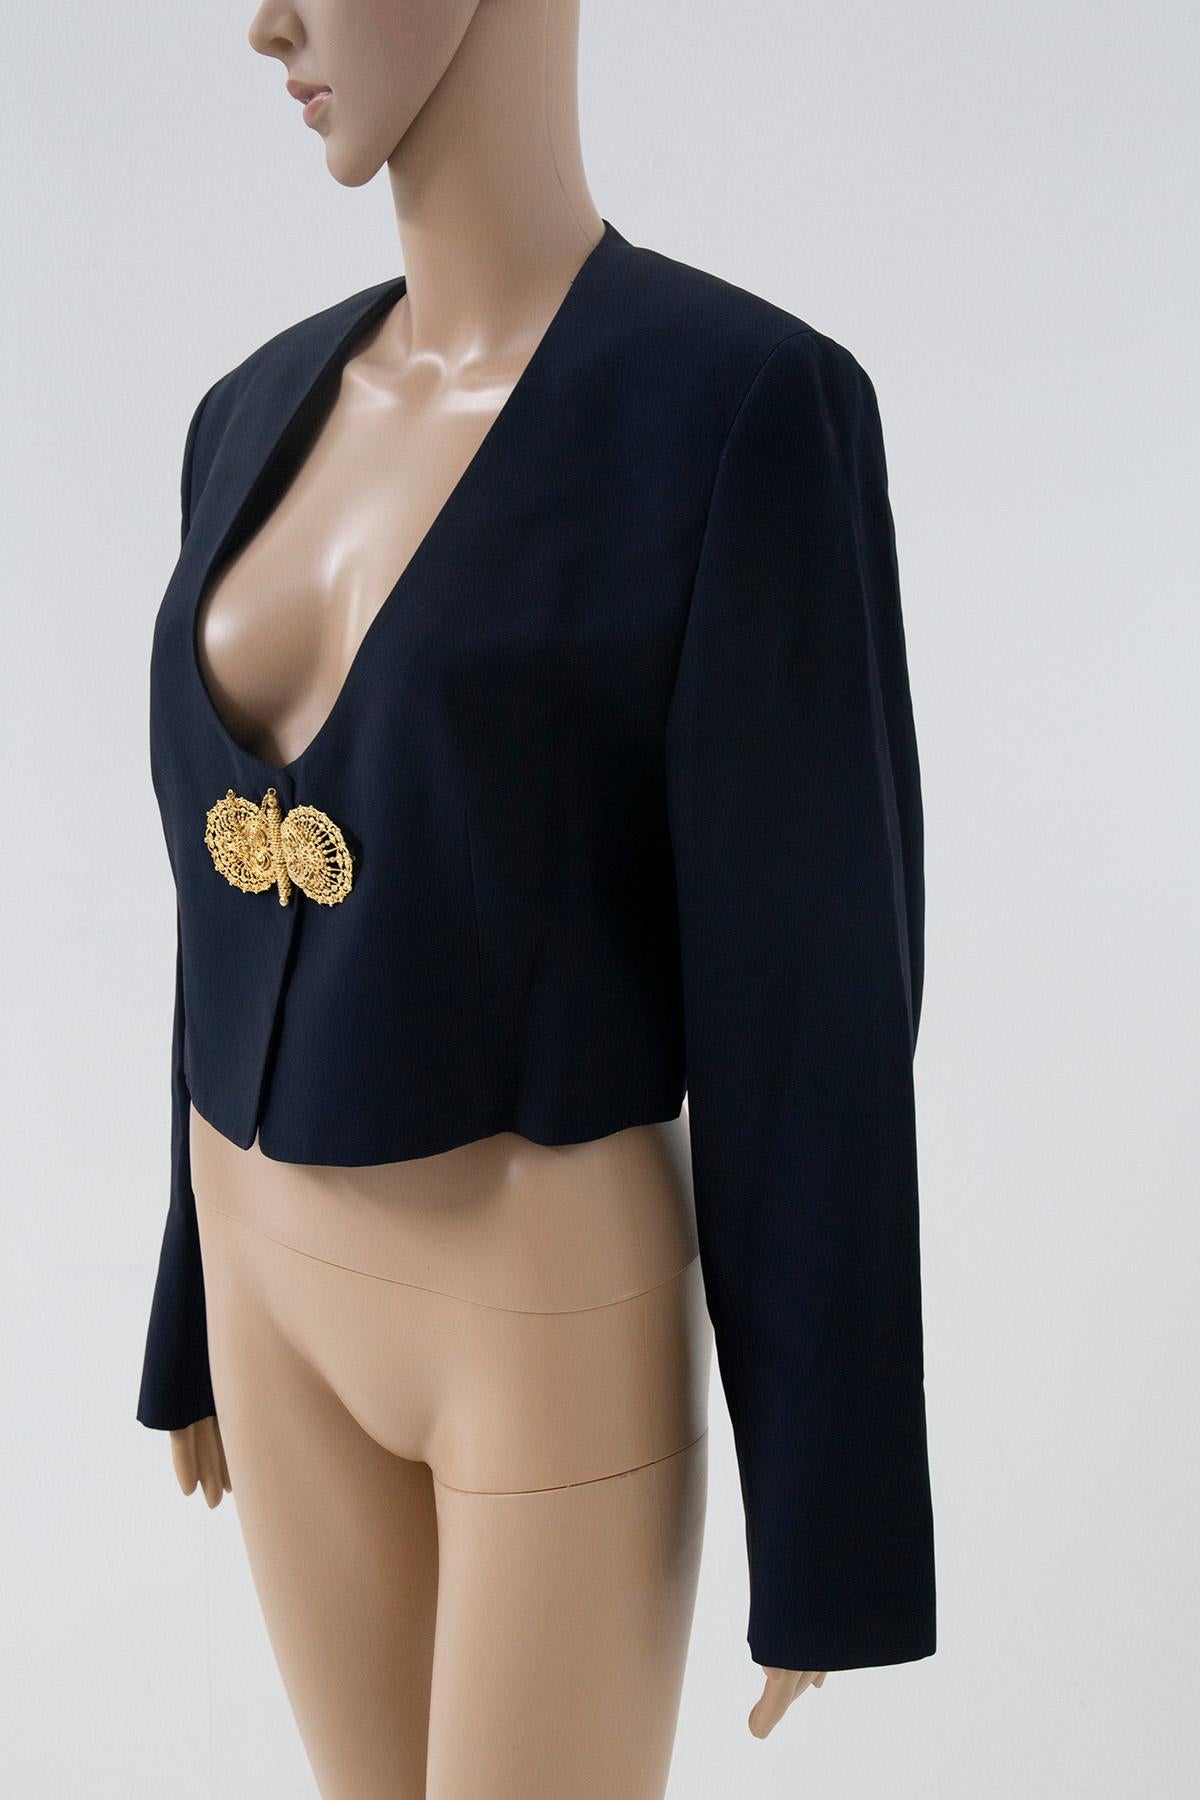 Gianfranco ferrè Studio 001 Cropped Jackets with jewel 3